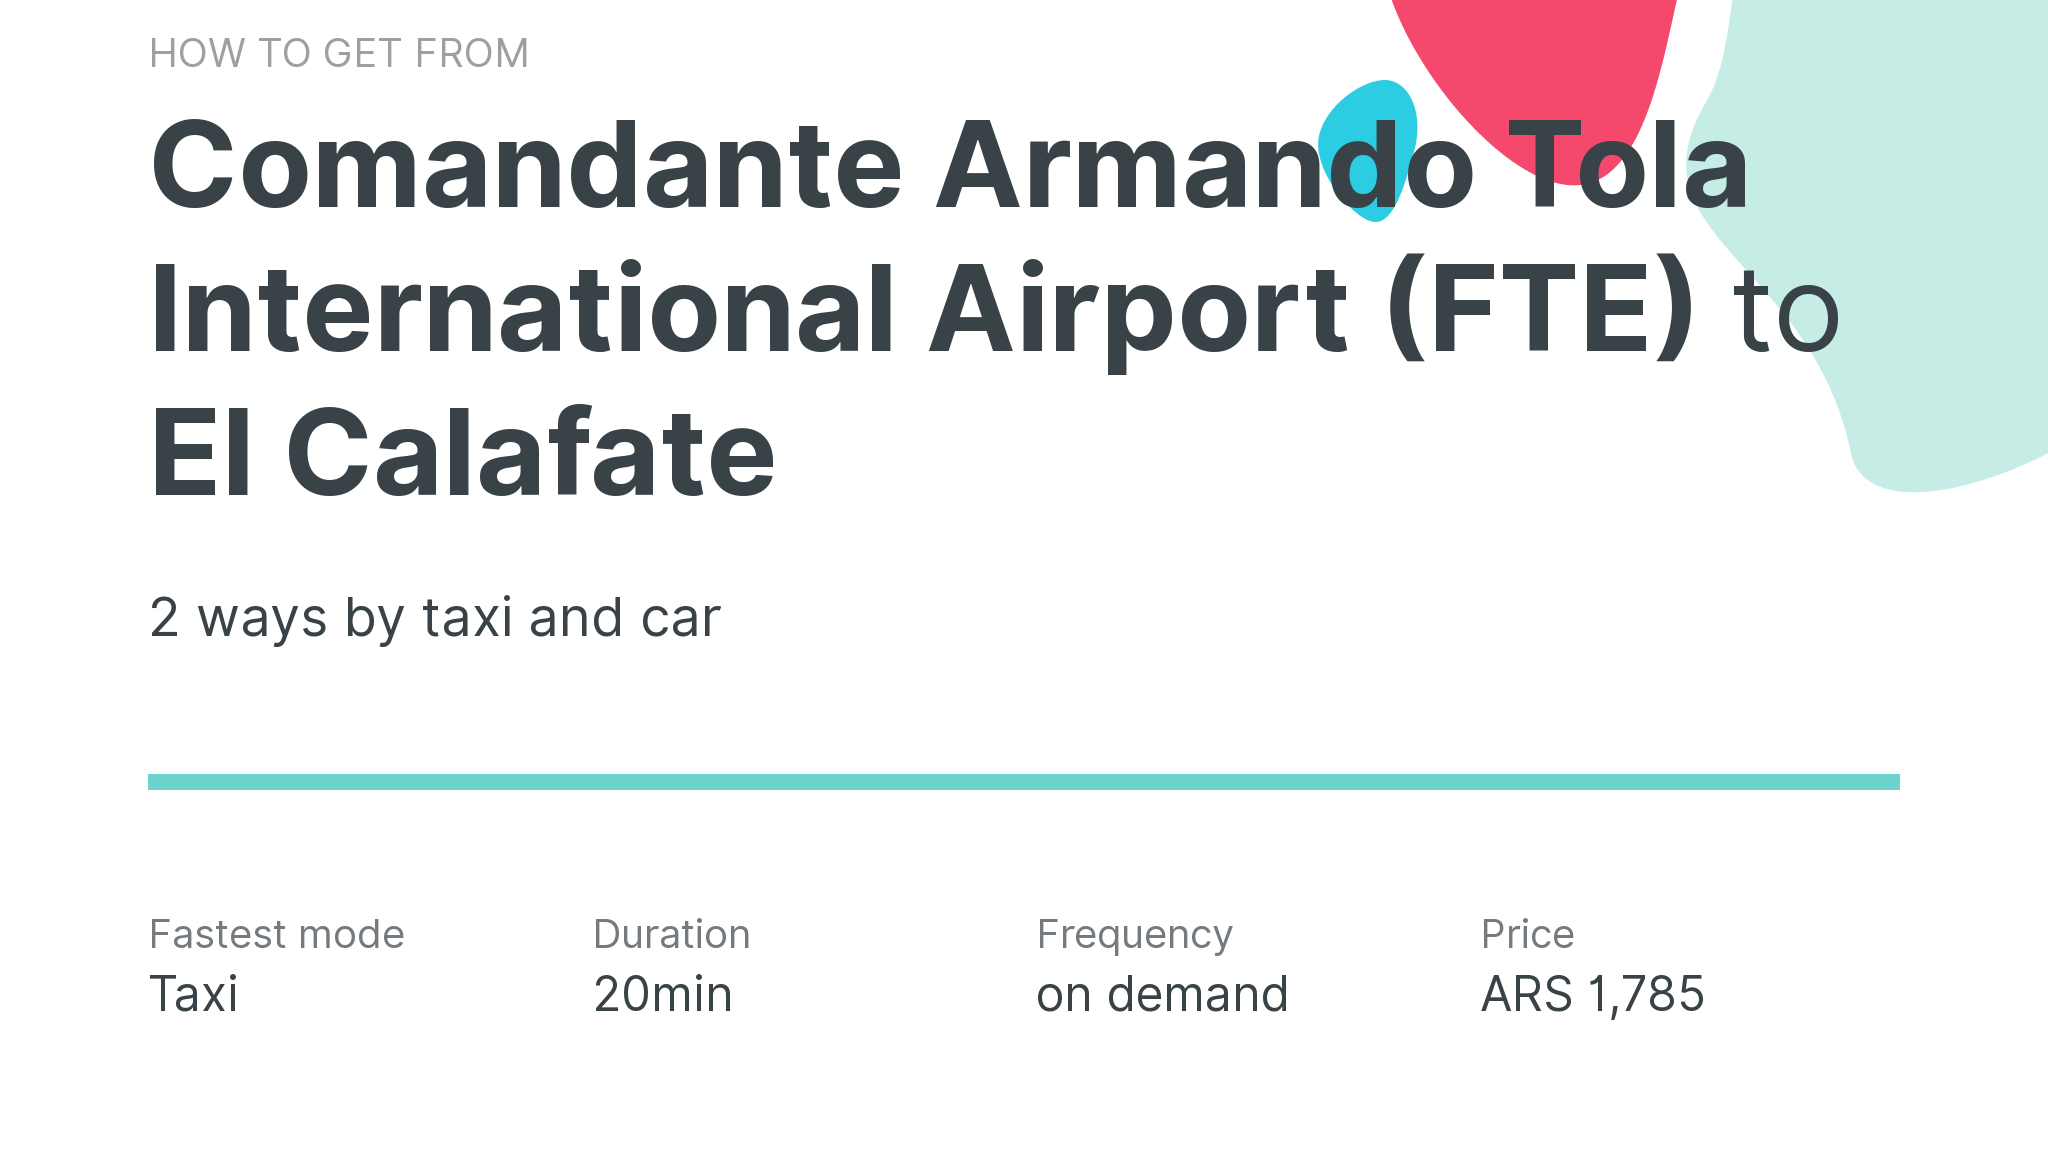 How do I get from Comandante Armando Tola International Airport (FTE) to El Calafate